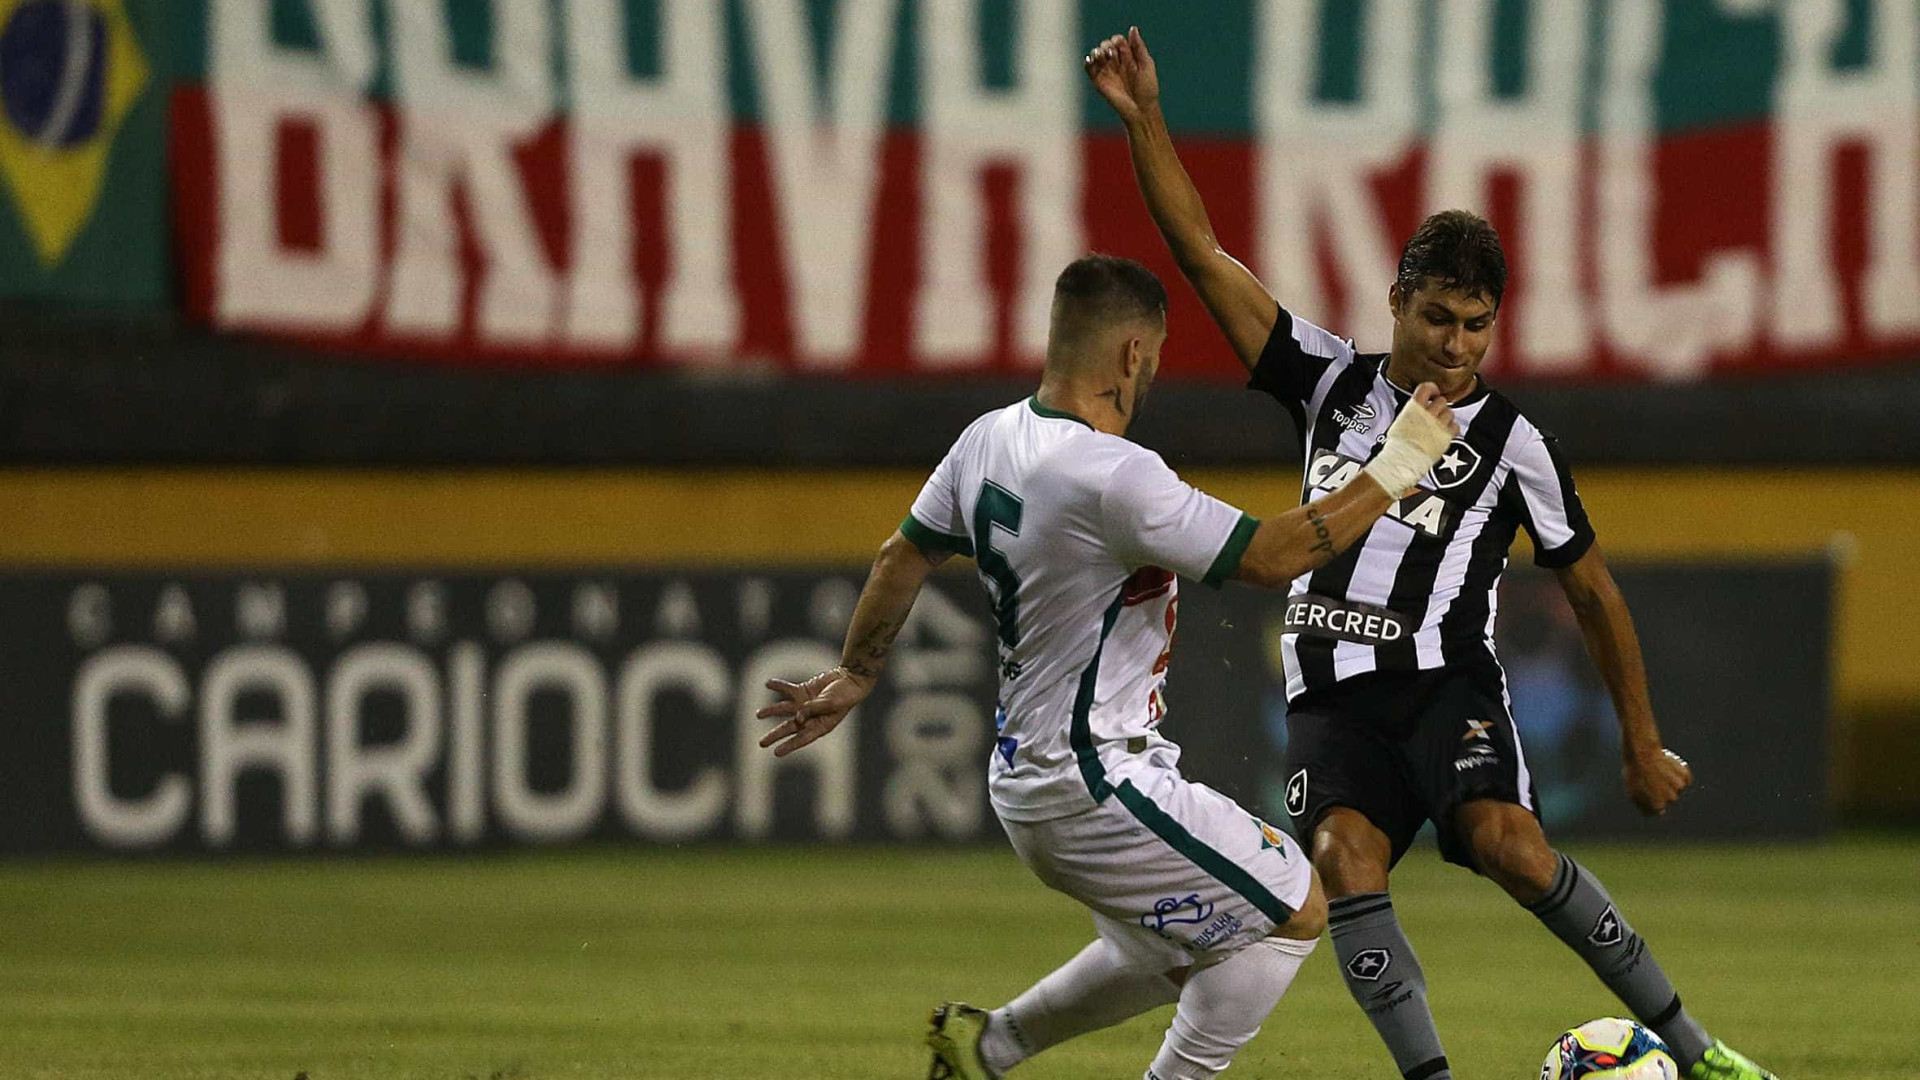 Resumão da rodada: Botafogo goleia e Sport
perde para ‘carrasco’